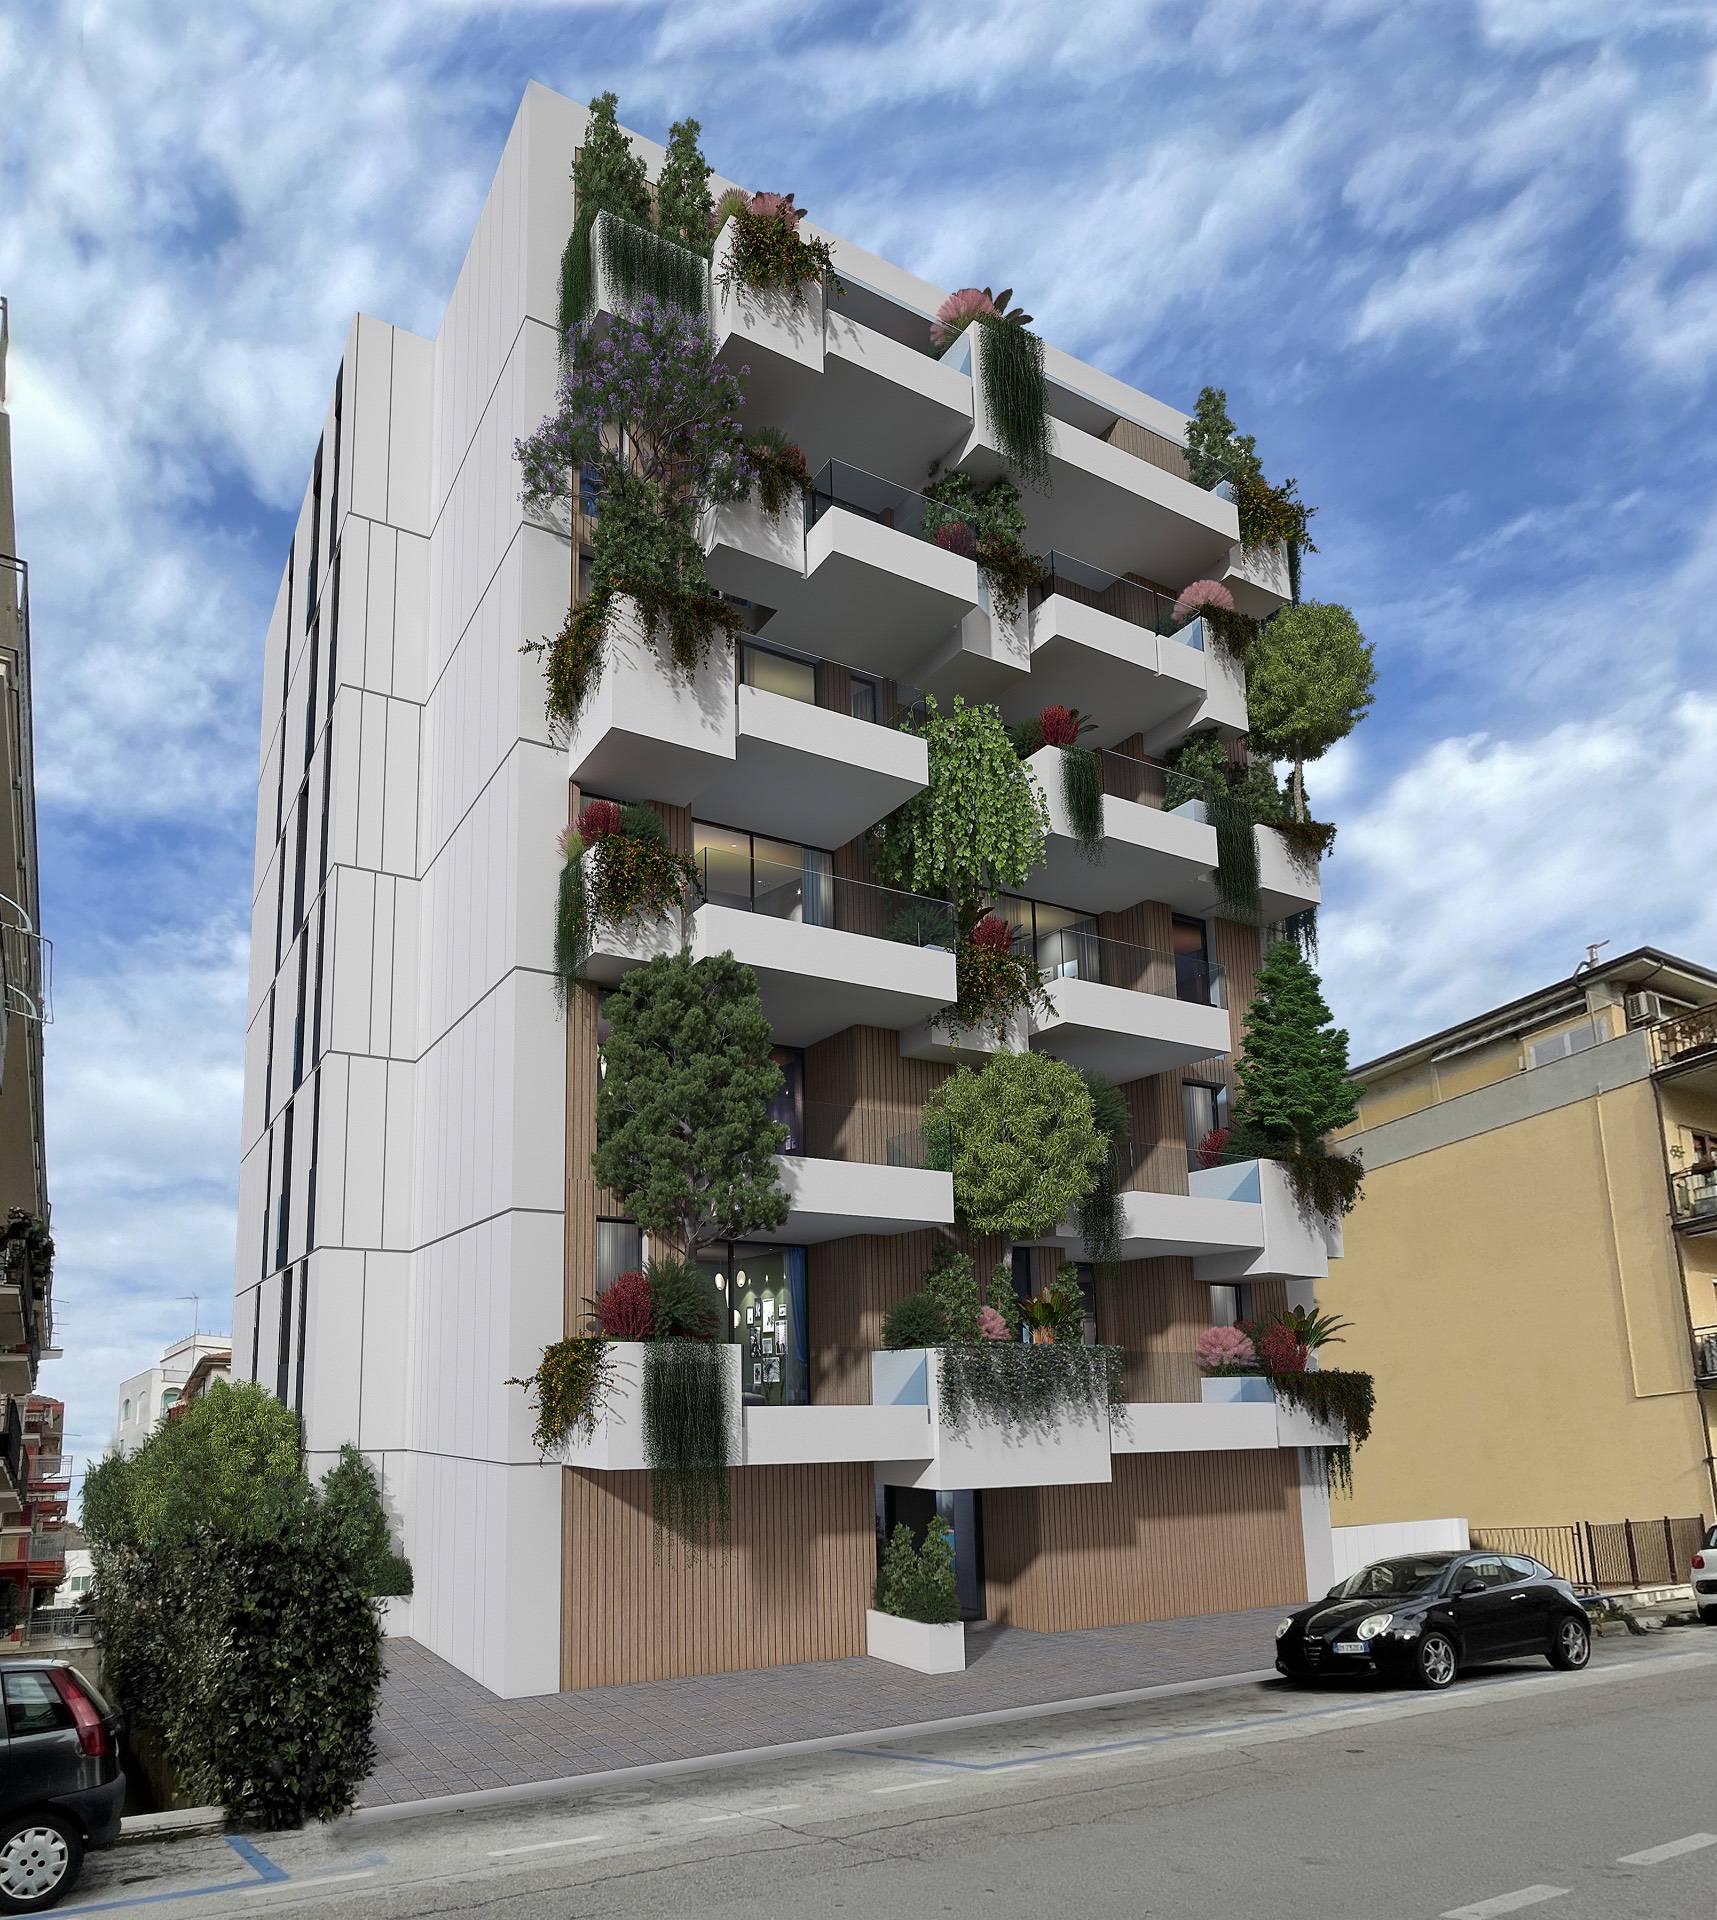 Appartamento in vendita a San Benedetto del Tronto, 2 locali, zona Località: PortoDascolilungomare, prezzo € 265.000 | PortaleAgenzieImmobiliari.it